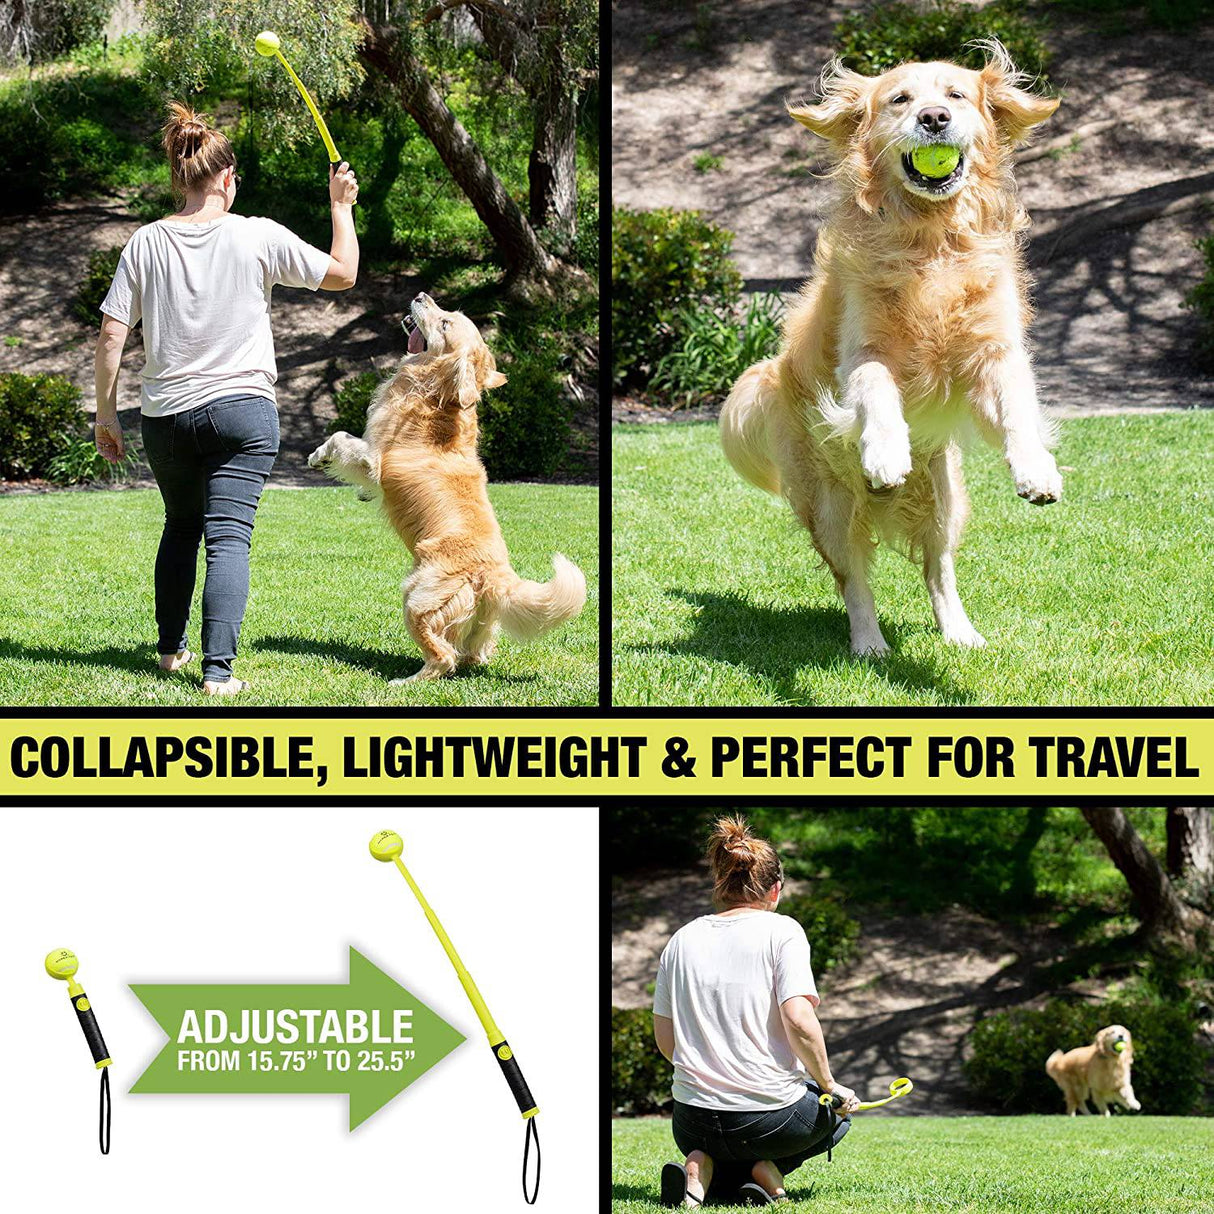 Hyper Pet Dog Ball Launcher, Dog Ball Thrower-Juguetes interactivos para perros (cargar y lanzar pelotas de tenis para que los perros las busquen) - DIGVICE MX